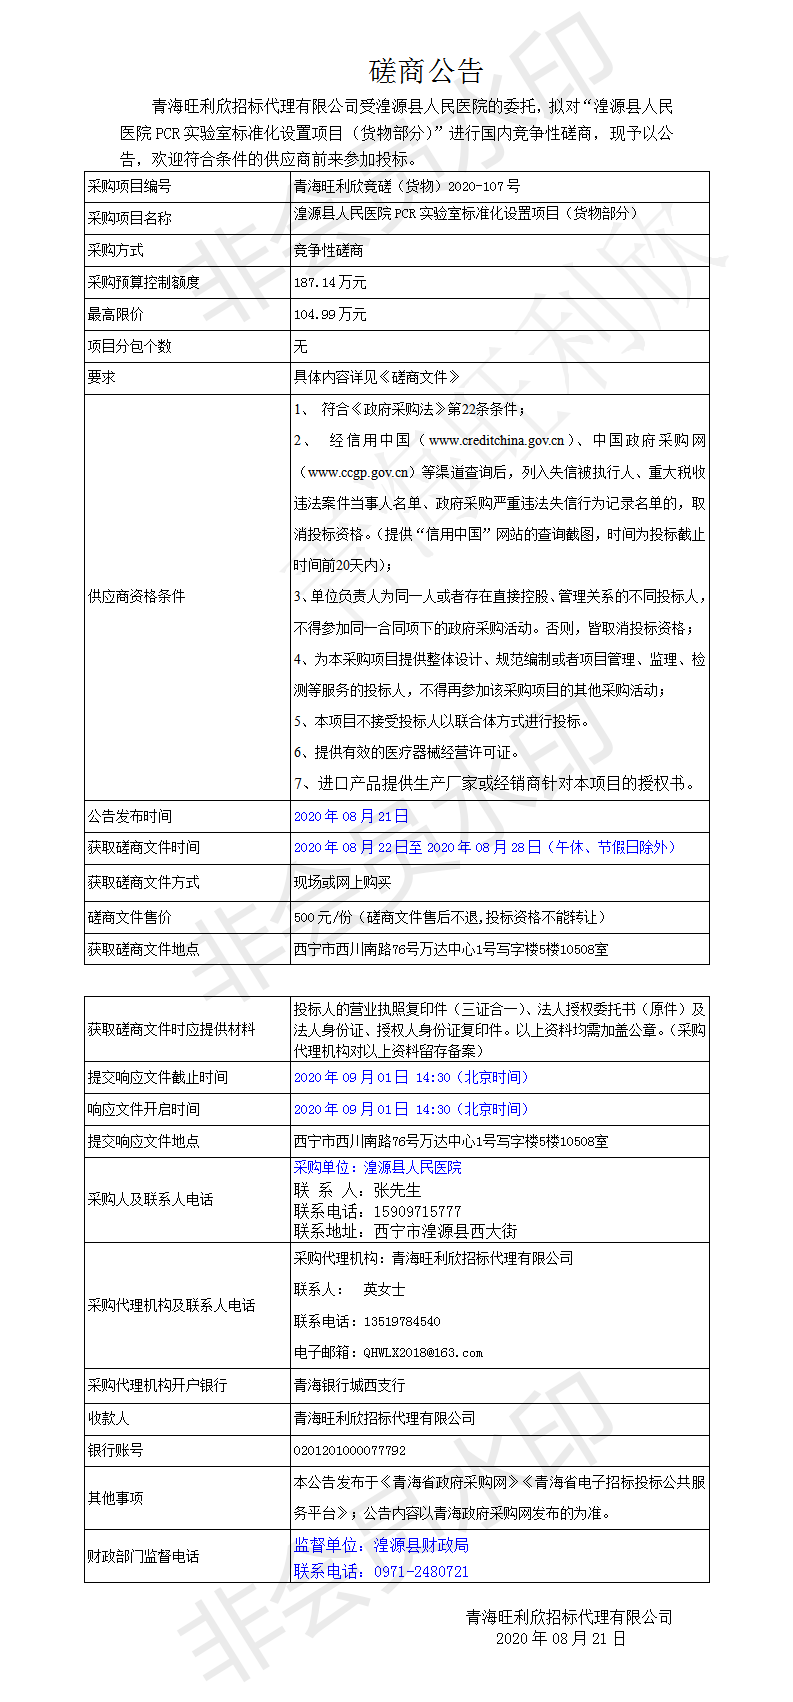 湟源县人民医院PCR实验室标准化设置项目（货物部分）磋商公告.png